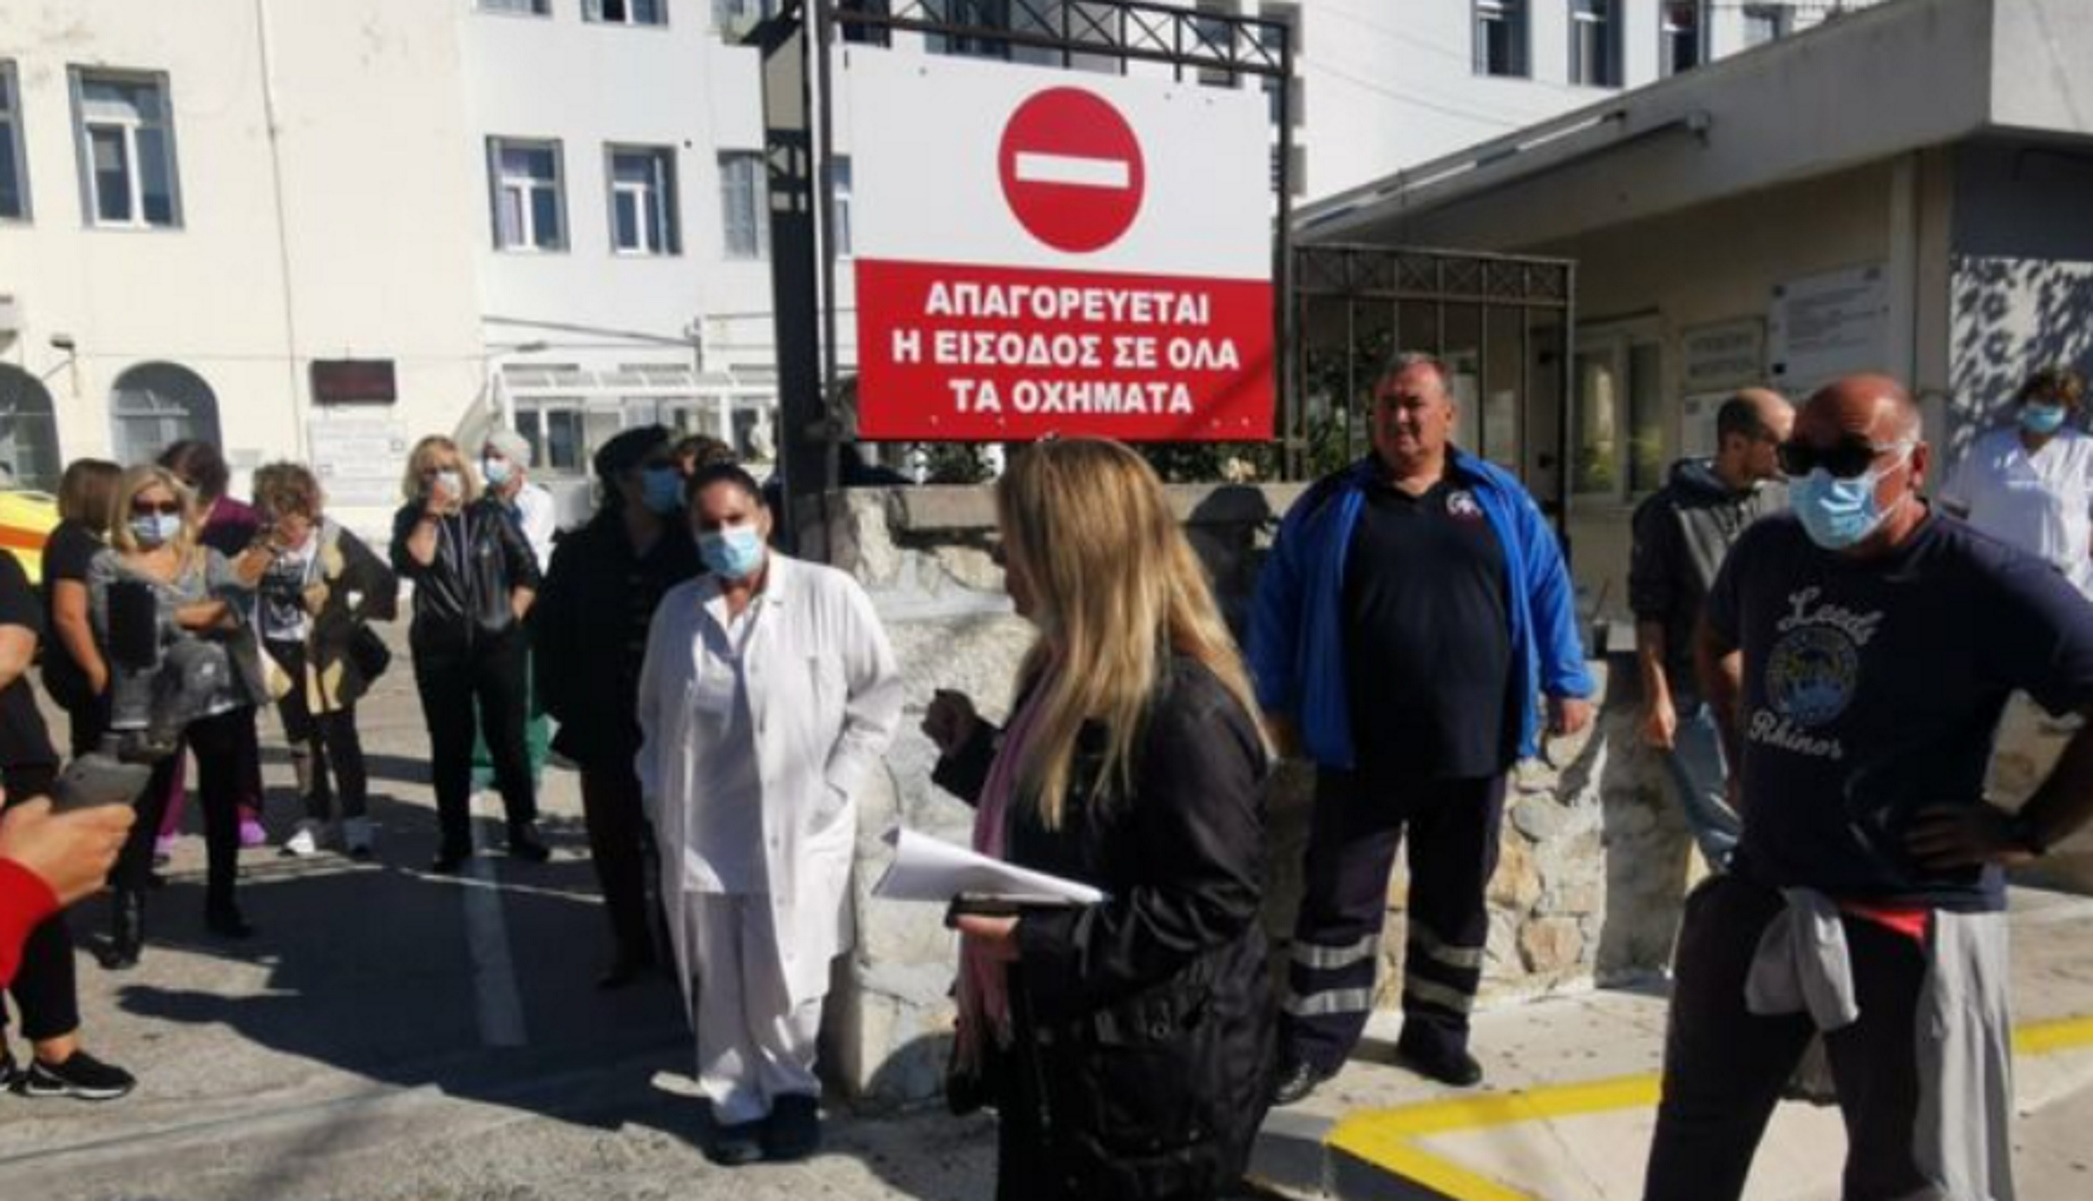 Νοσοκομείο Σύρου: Λειτουργεί ως κέντρο υγείας – Αναβλήθηκαν όλα τα χειρουργεία